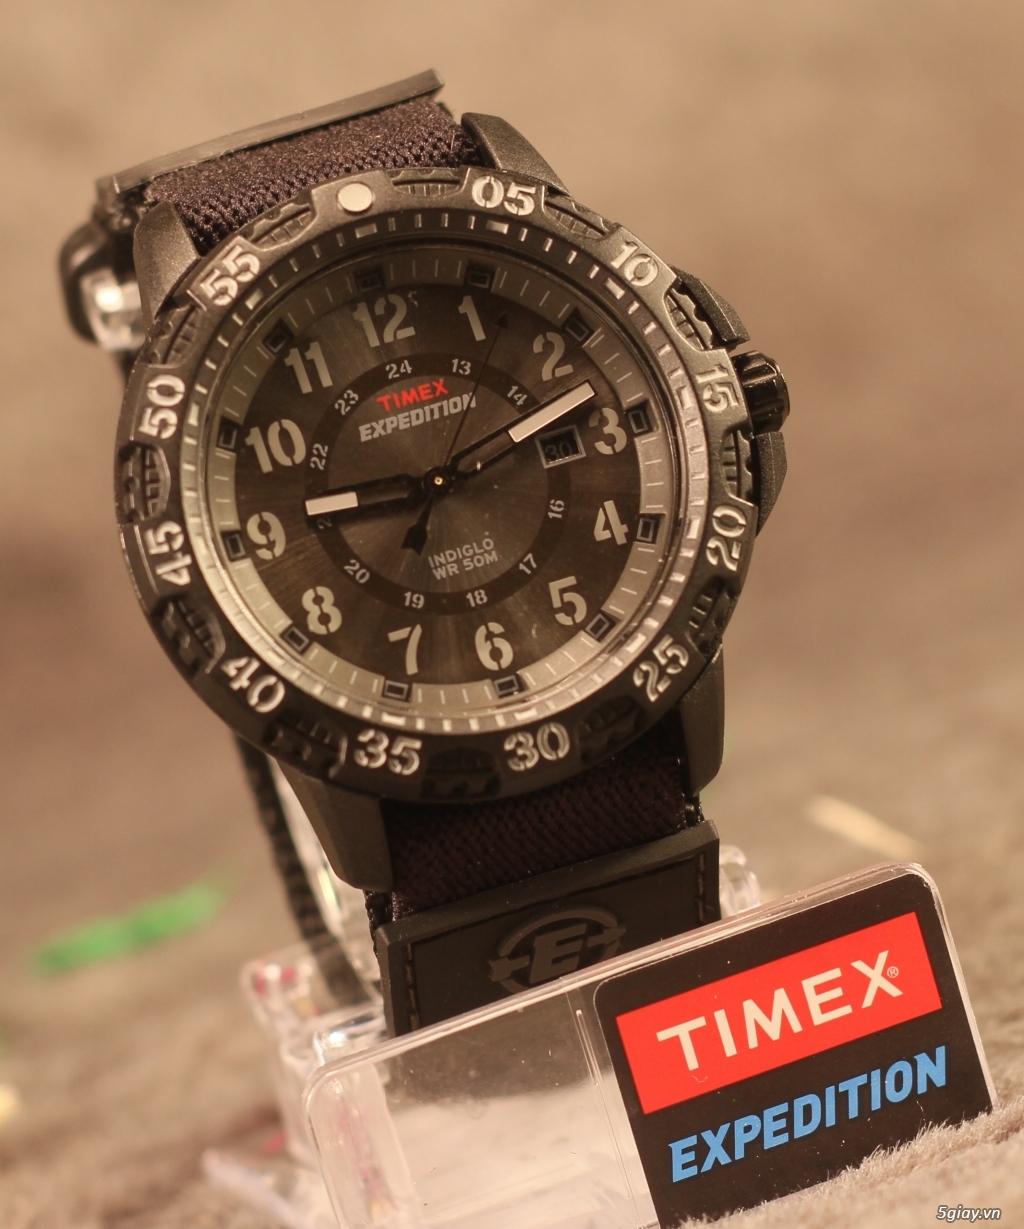 Chuyên Đồng Hồ Timex xách tay Mỹ giá tốt nhất thế giới - 5